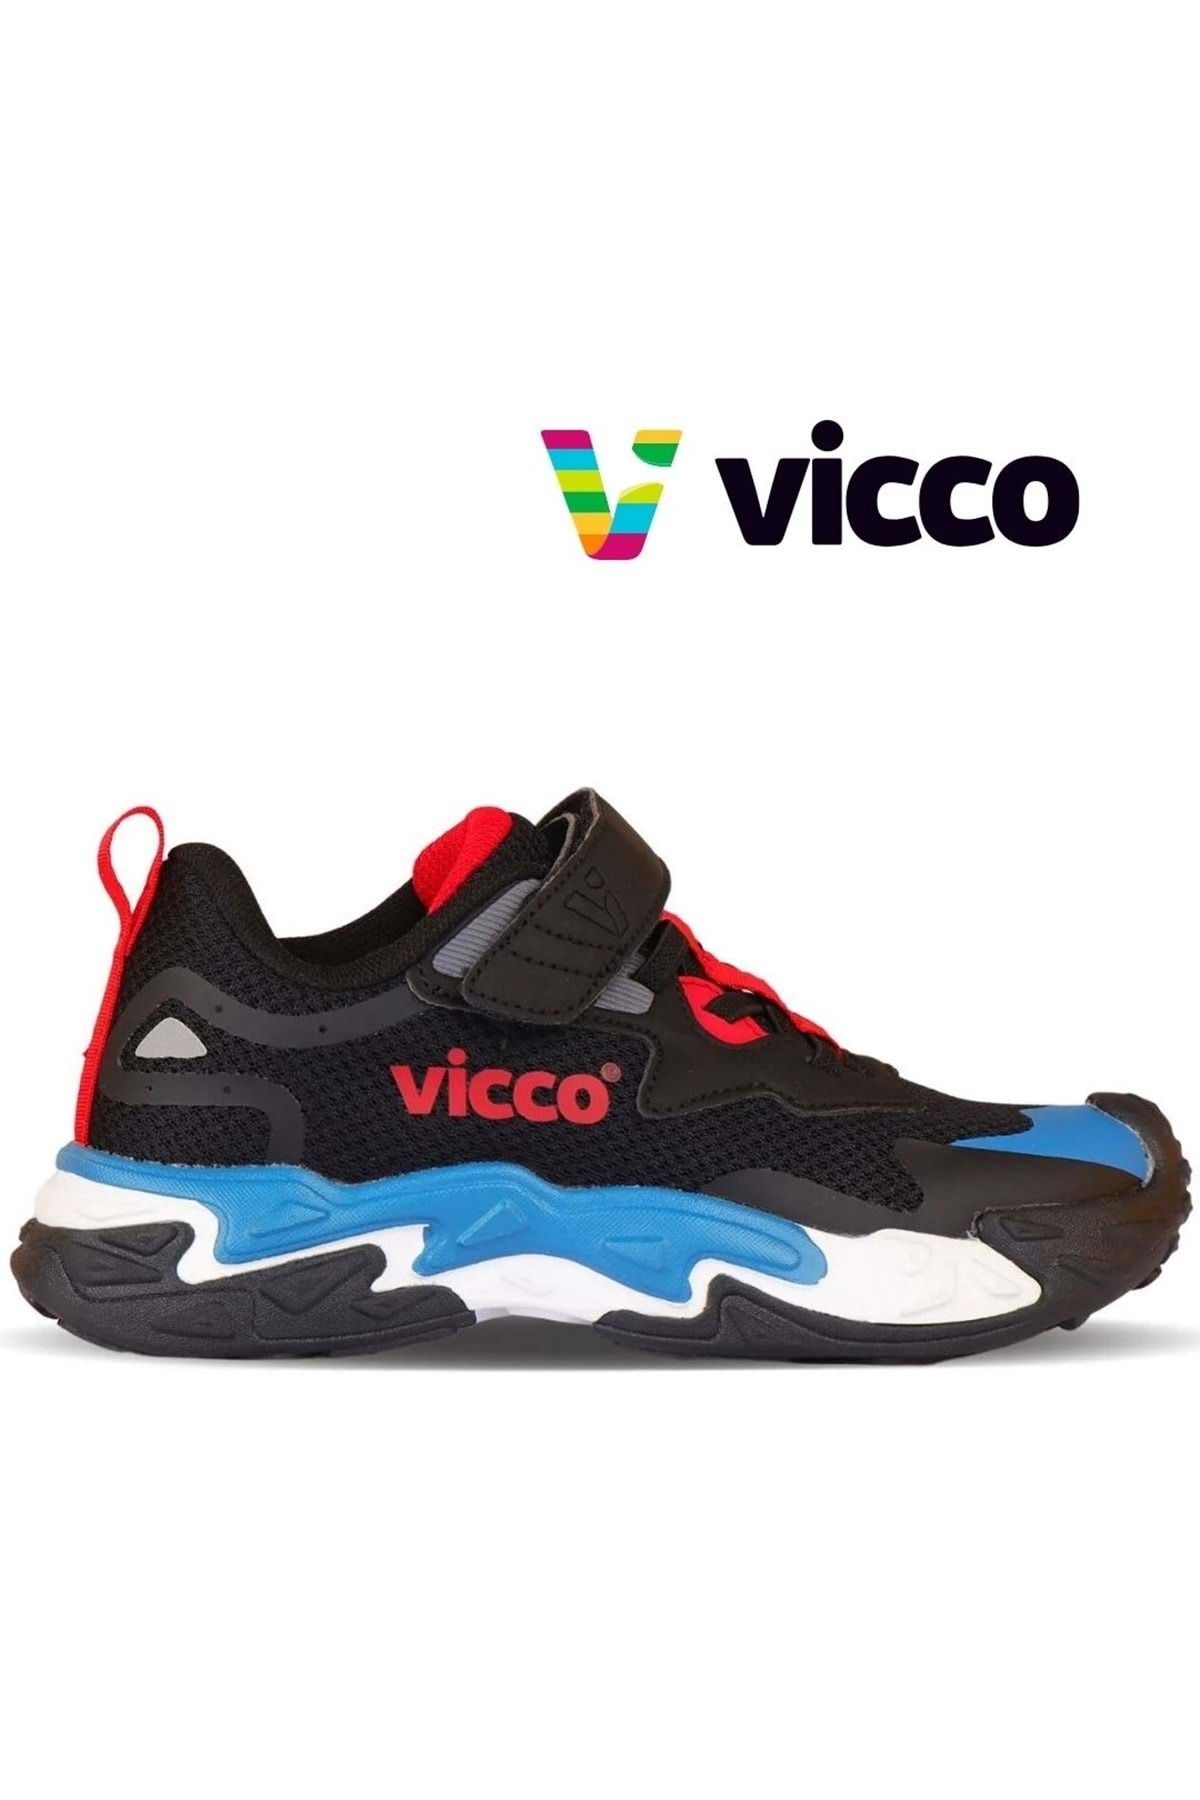 Vicco Umbre Ortopedik Çocuk Spor Ayakkabı Siyah